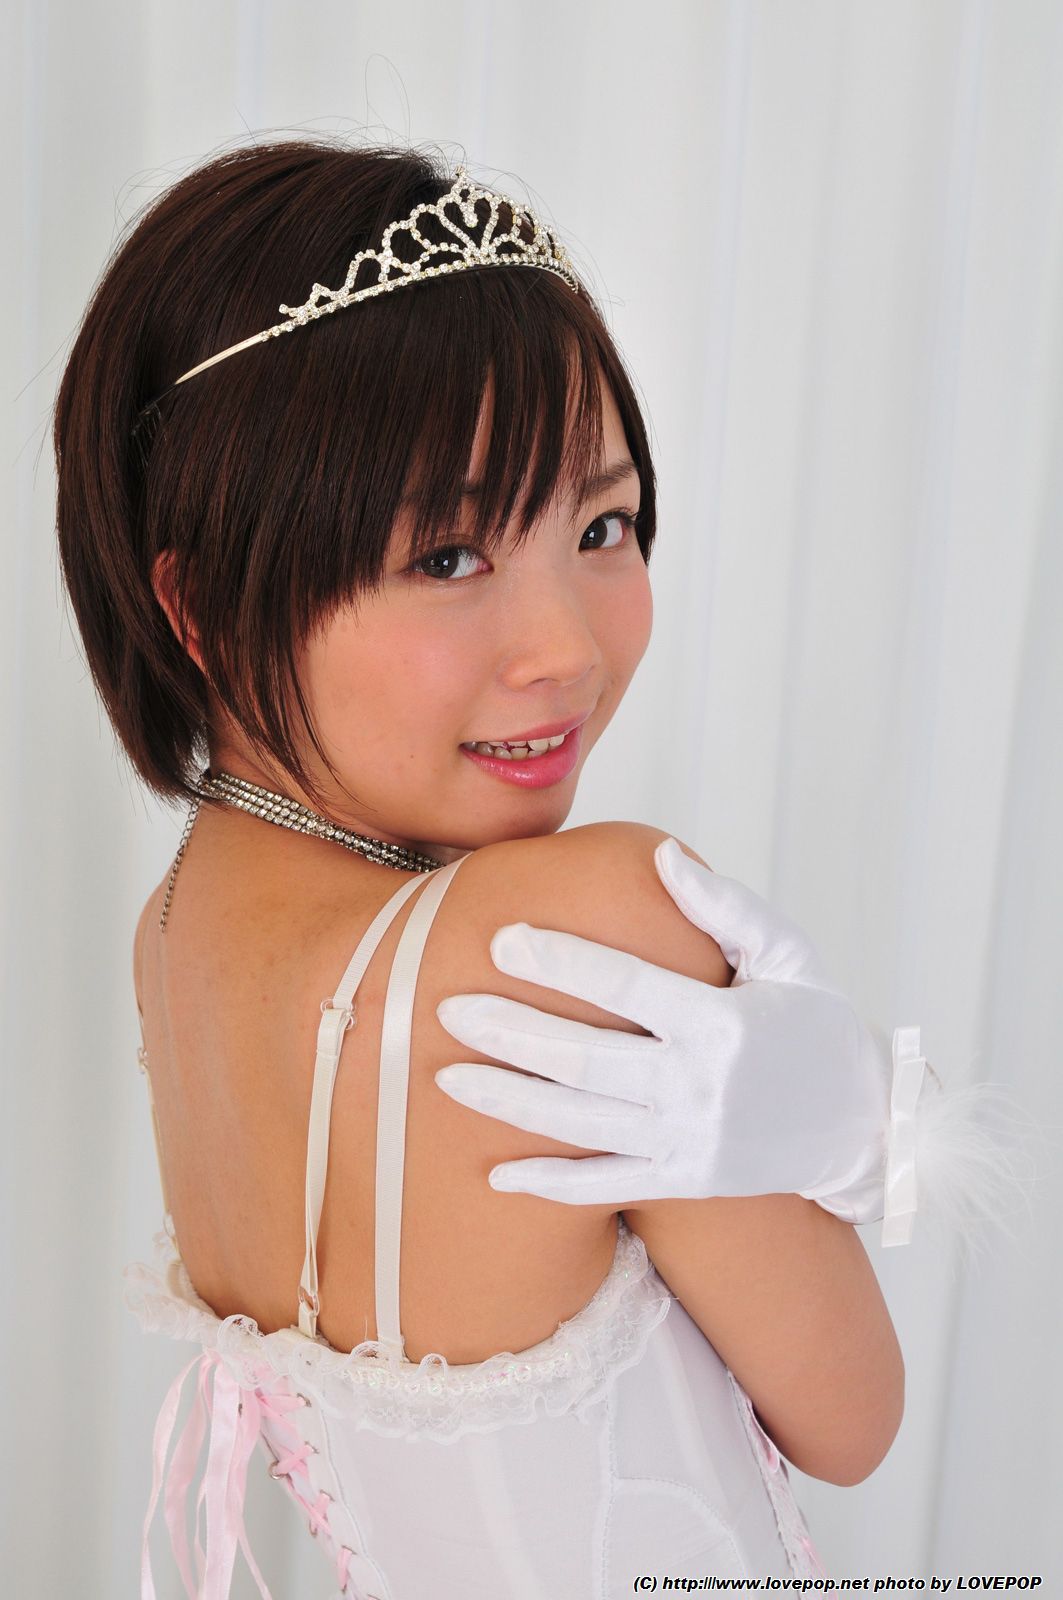 [lovepop] Mana Sakura Wa Wa Photot 06 Share Erotic Asian Girl Picture And Livestream